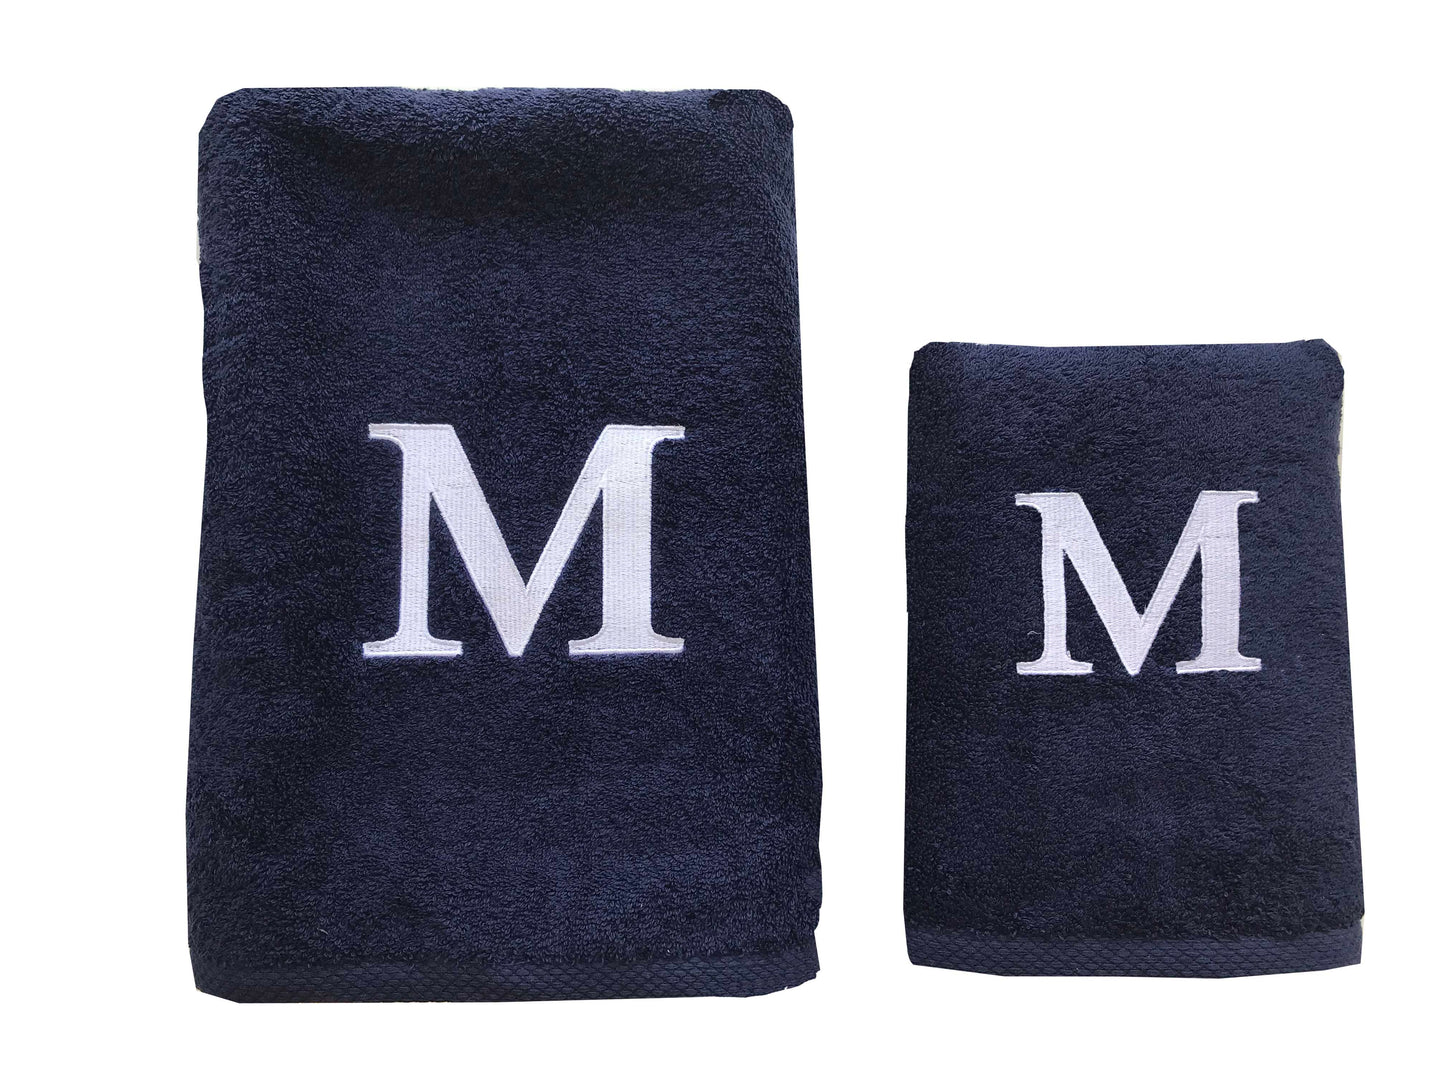 Premium Handtuch -  Mit edler Stickerei Buchstabe "M" - Vielseitig, Nachhaltig, Saugstark & Schnelltrocknend - 100% Baumwolle LMS-6642 Marinenblau